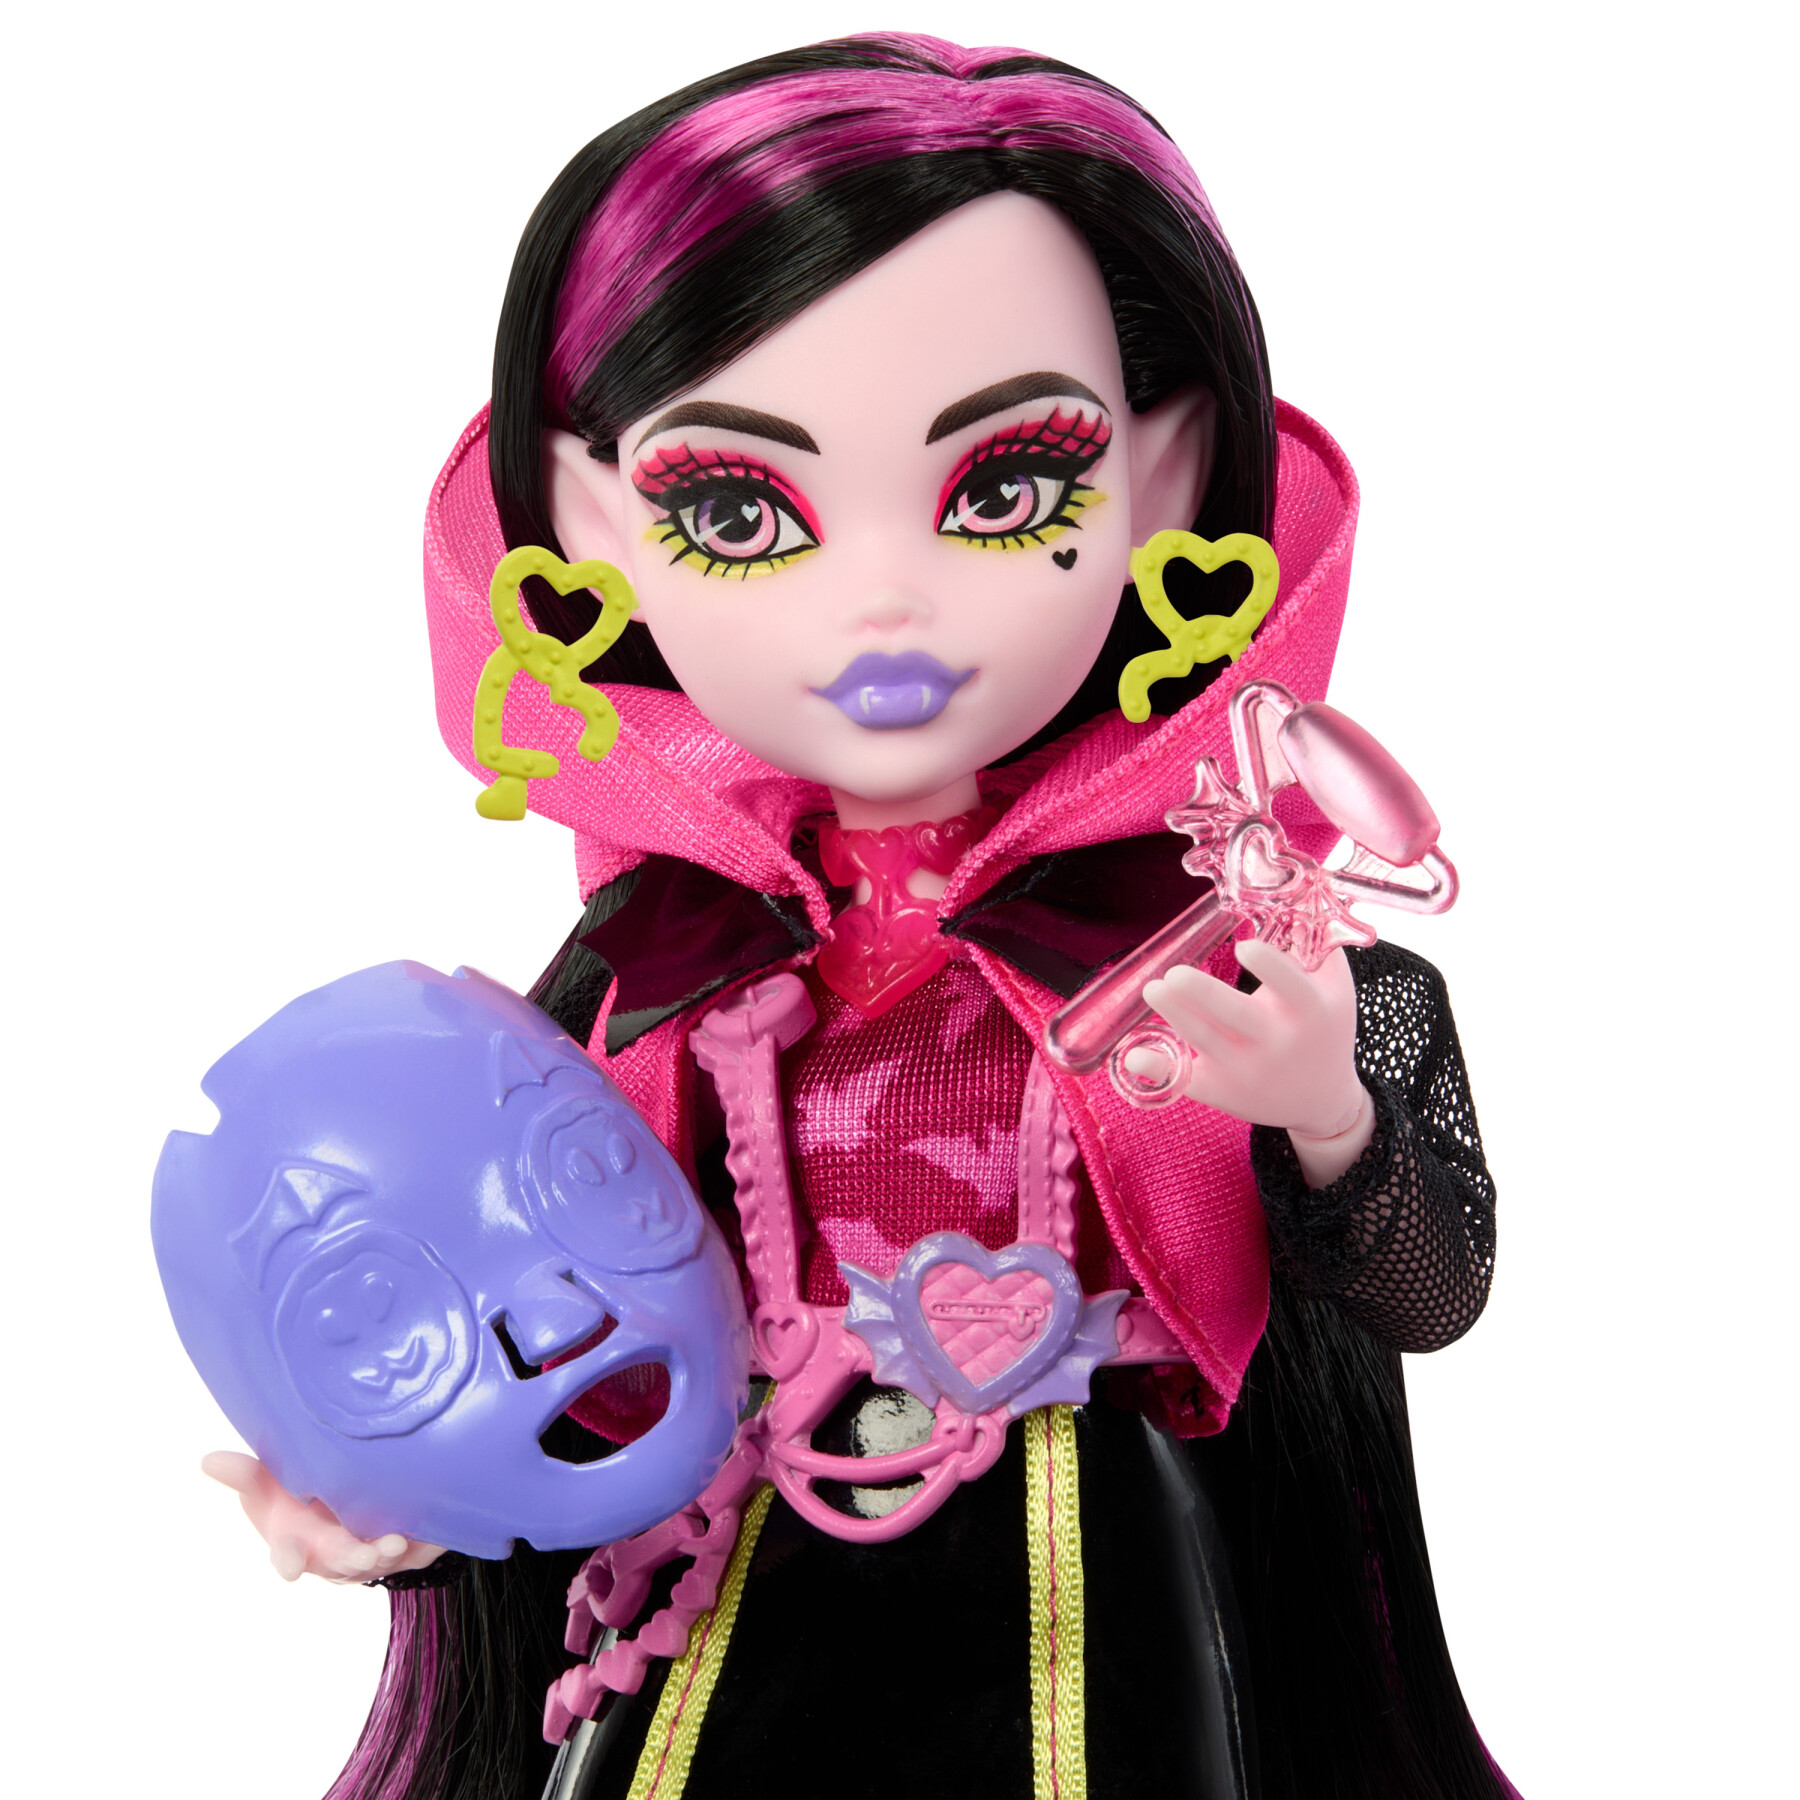 Monster high - segreti da brivido neon frights draculaura, playset con bambola, abiti e armadietto per i look - Monster High